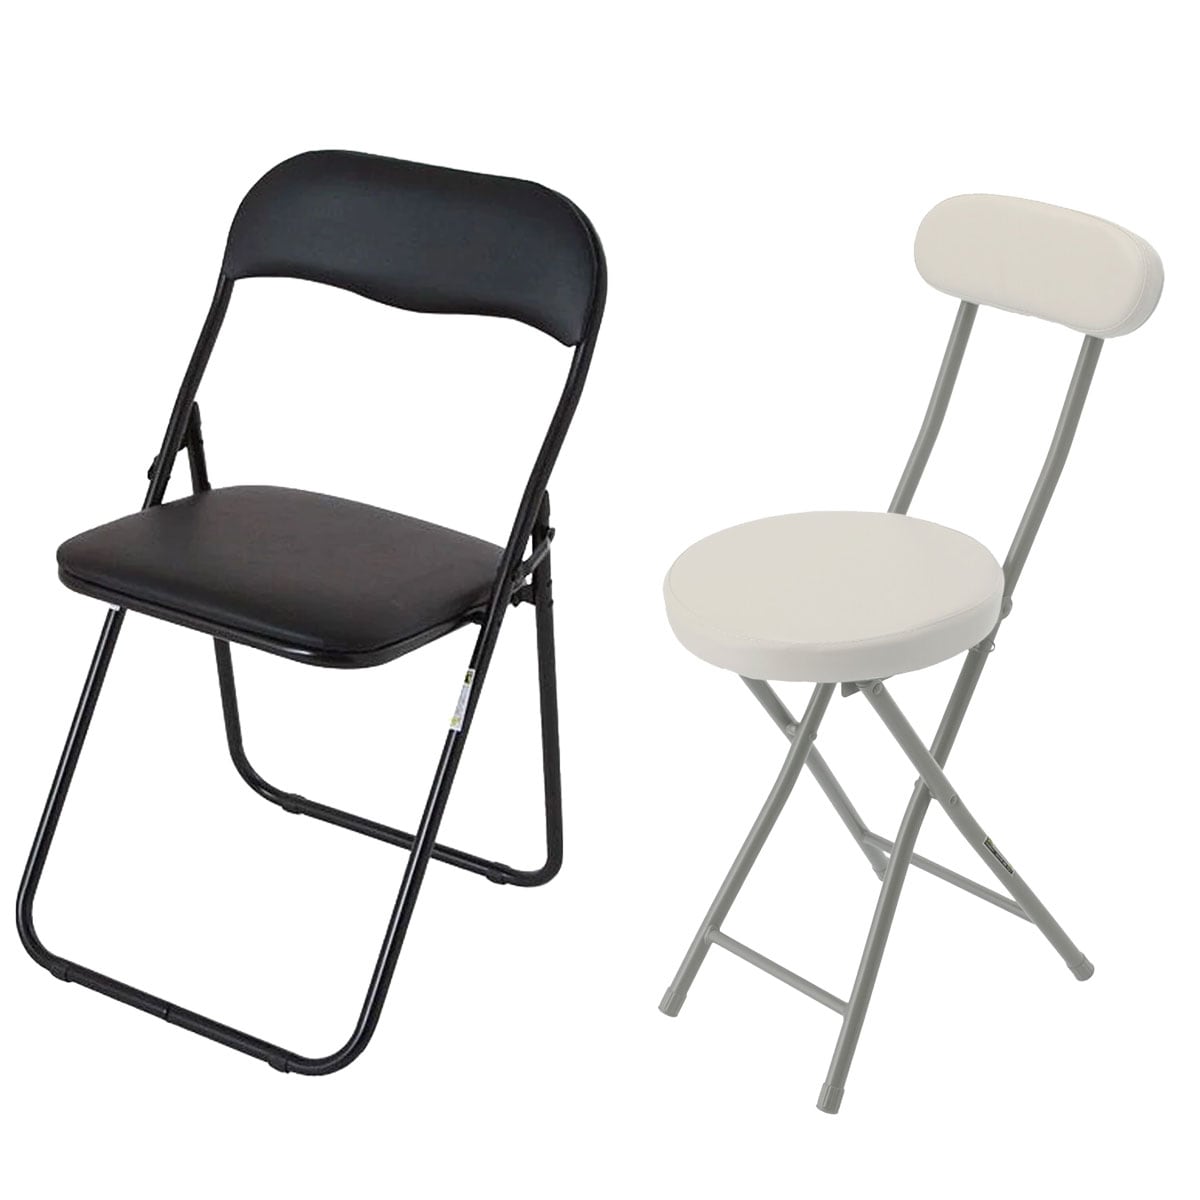 椅子・チェア通販 | ニトリネット【公式】 家具・インテリア通販